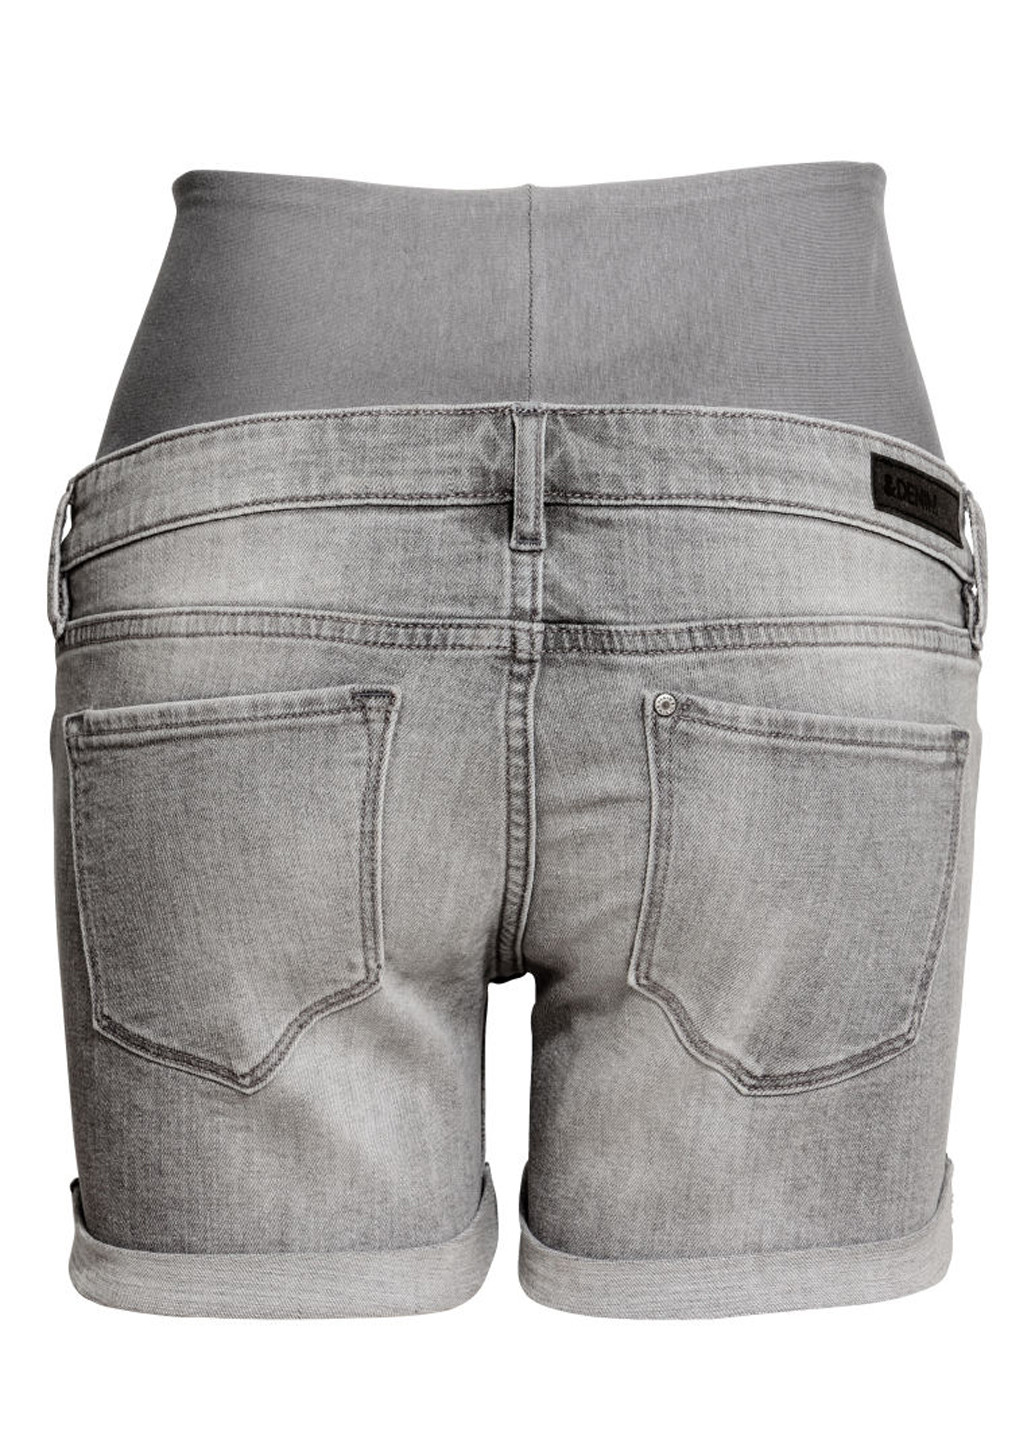 Шорты для беременных H&M однотонные светло-серые джинсовые